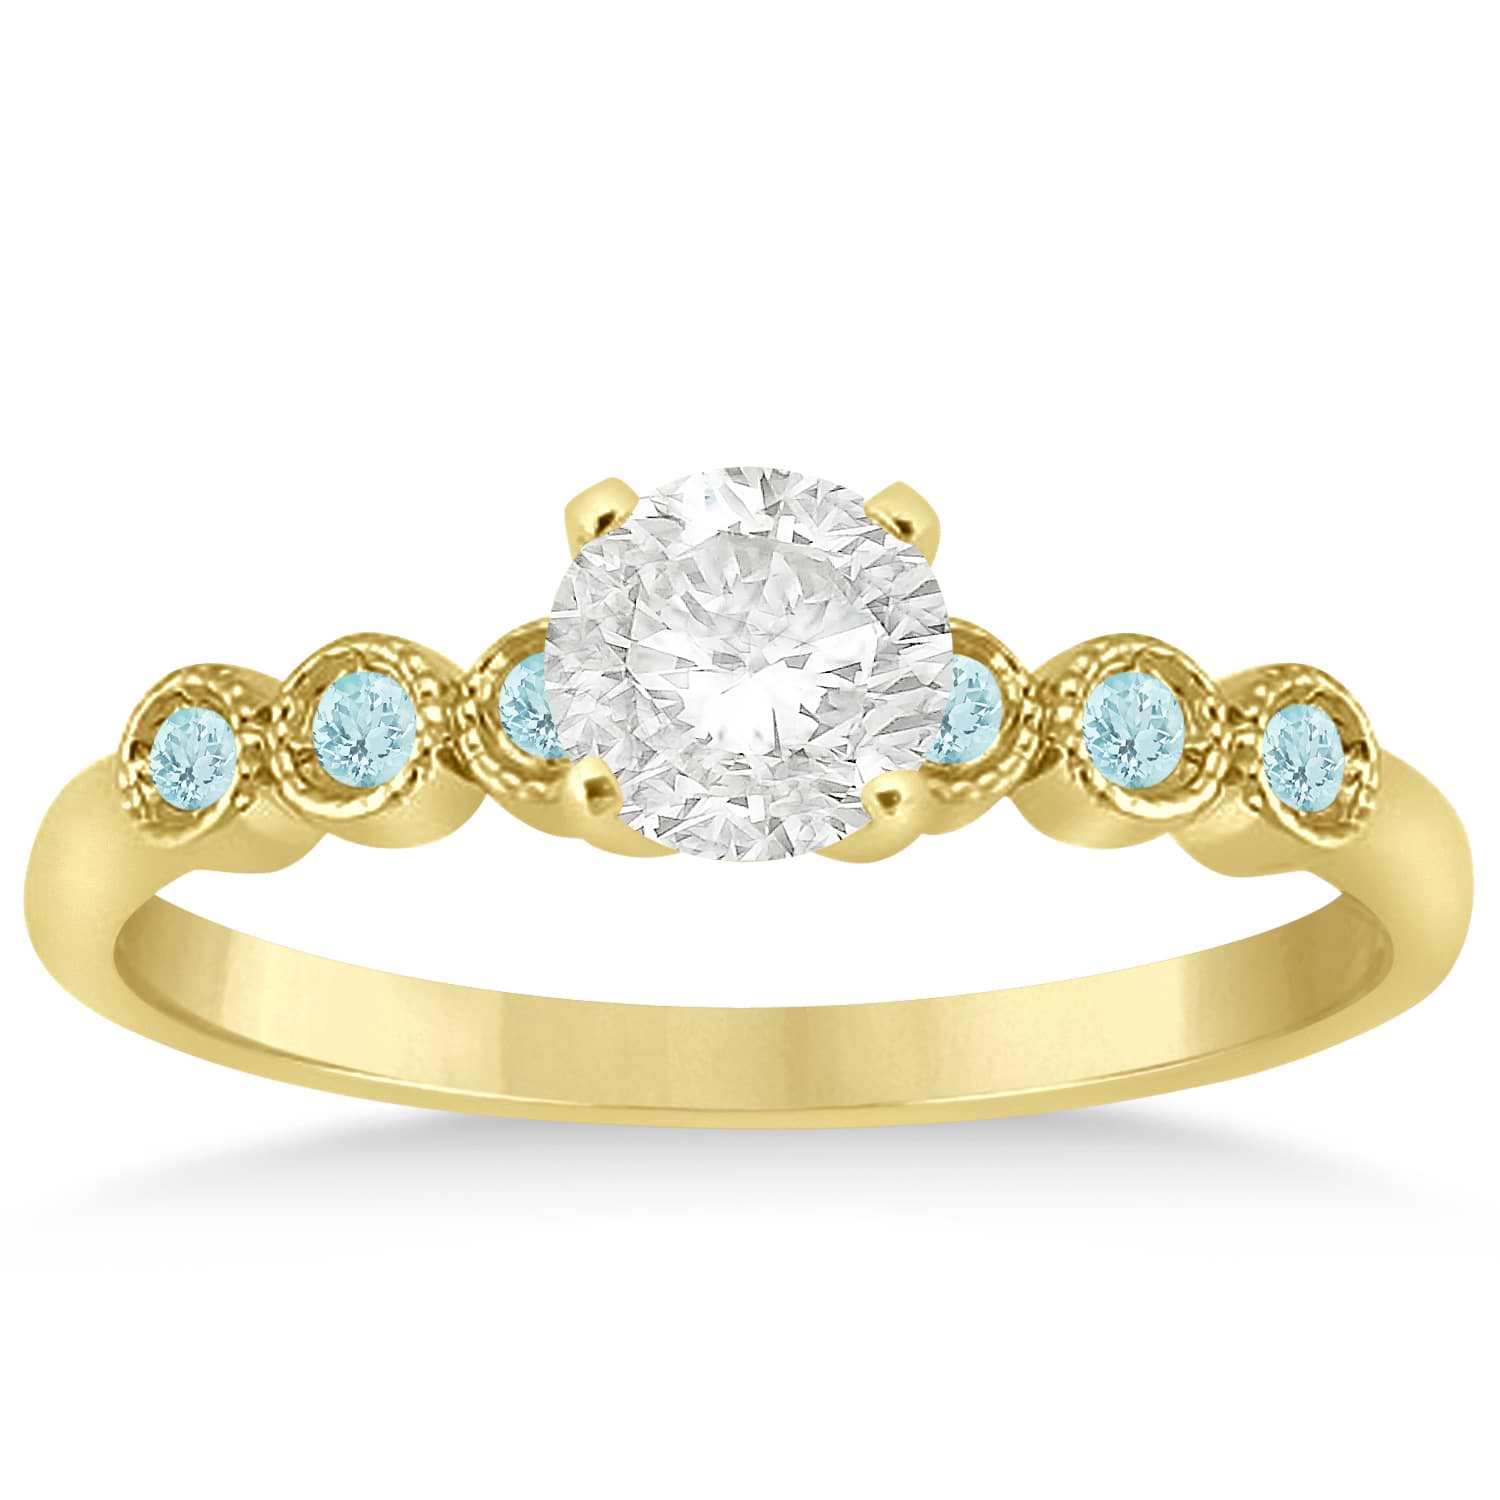 Aquamarine Bezel Set Engagement Ring Setting 14k Yellow Gold 0.09ct